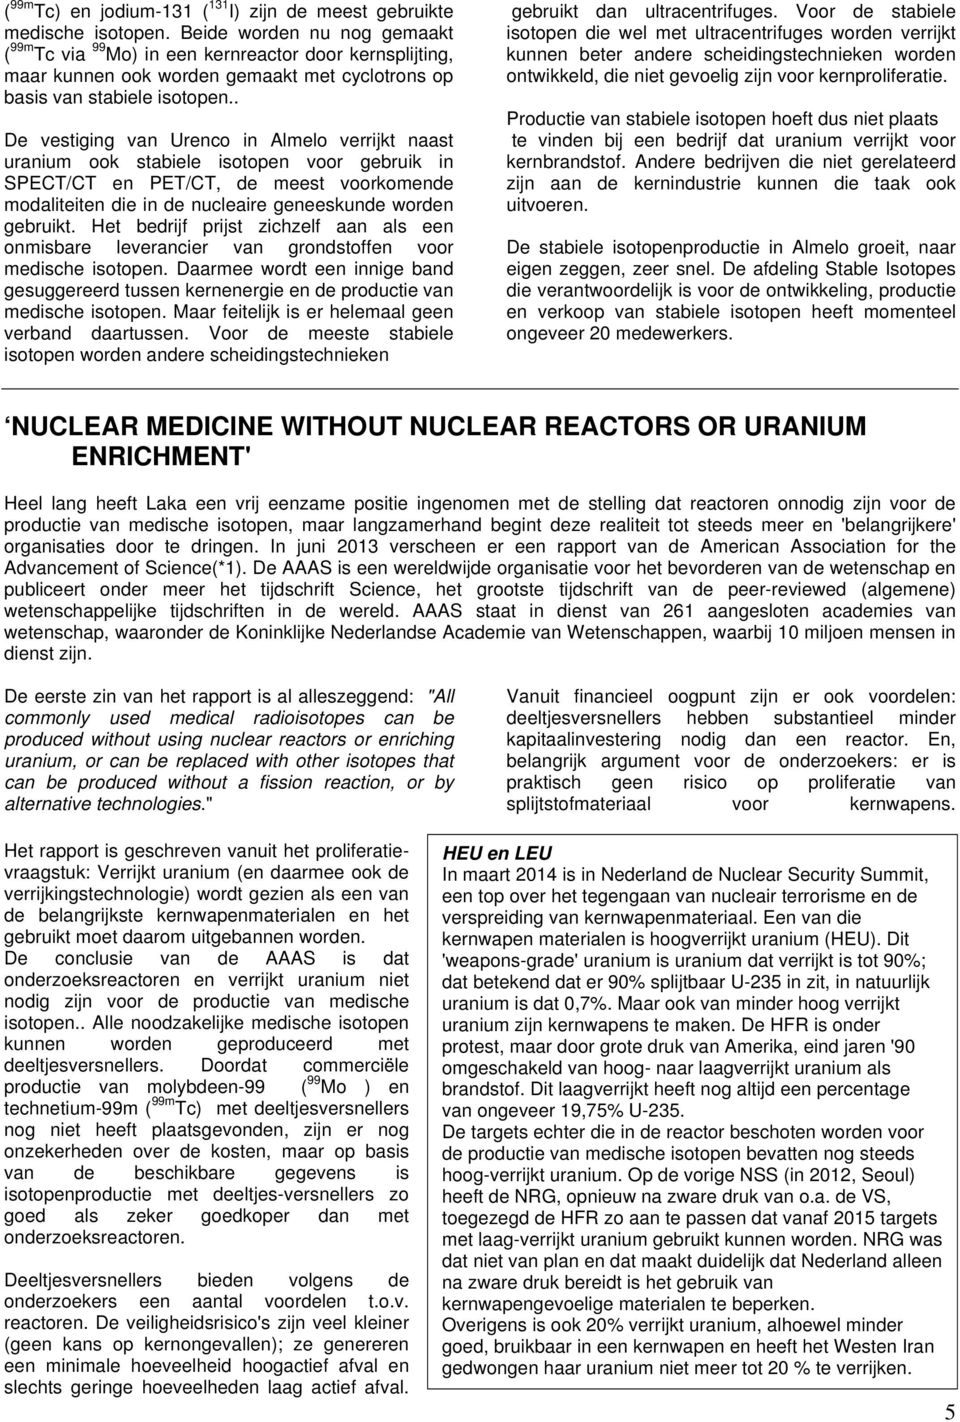 . De vestiging van Urenco in Almelo verrijkt naast uranium ook stabiele isotopen voor gebruik in SPECT/CT en PET/CT, de meest voorkomende modaliteiten die in de nucleaire geneeskunde worden gebruikt.